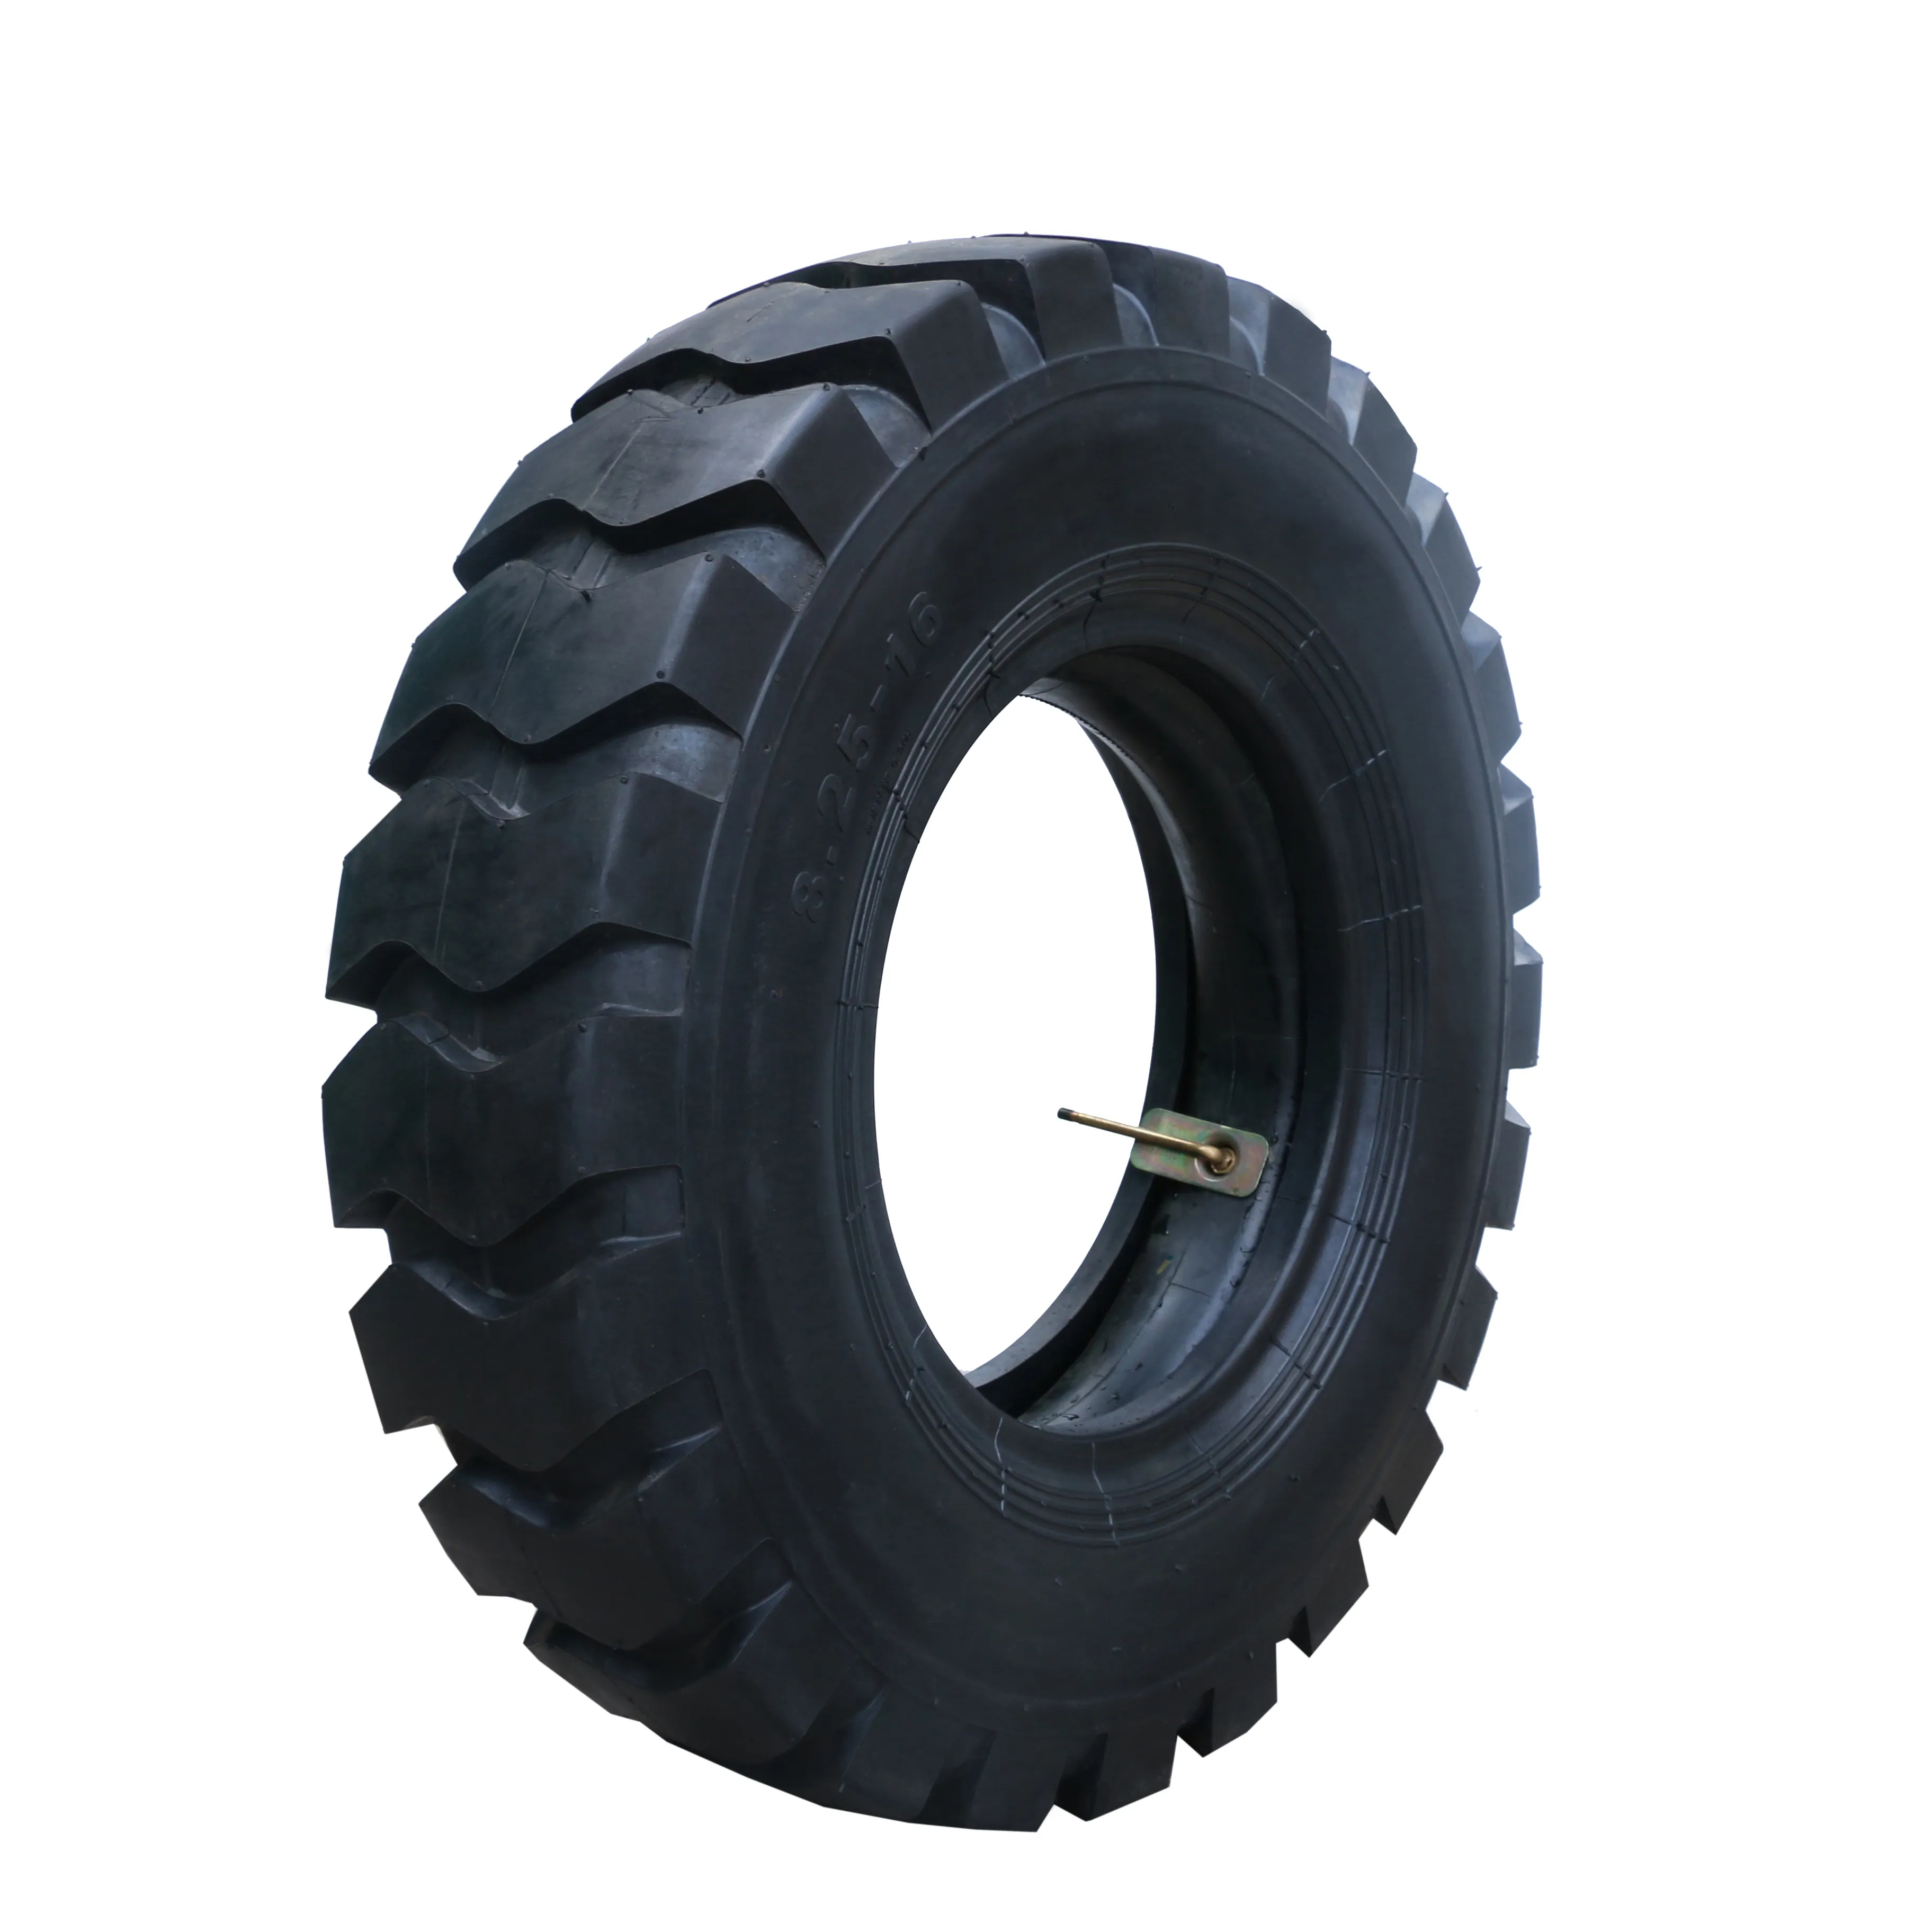 Nouveau pneu pneumatique 82516 pneus otr 82516 e3l3 14pr pneus pour chargeuses et bulldozers 82516